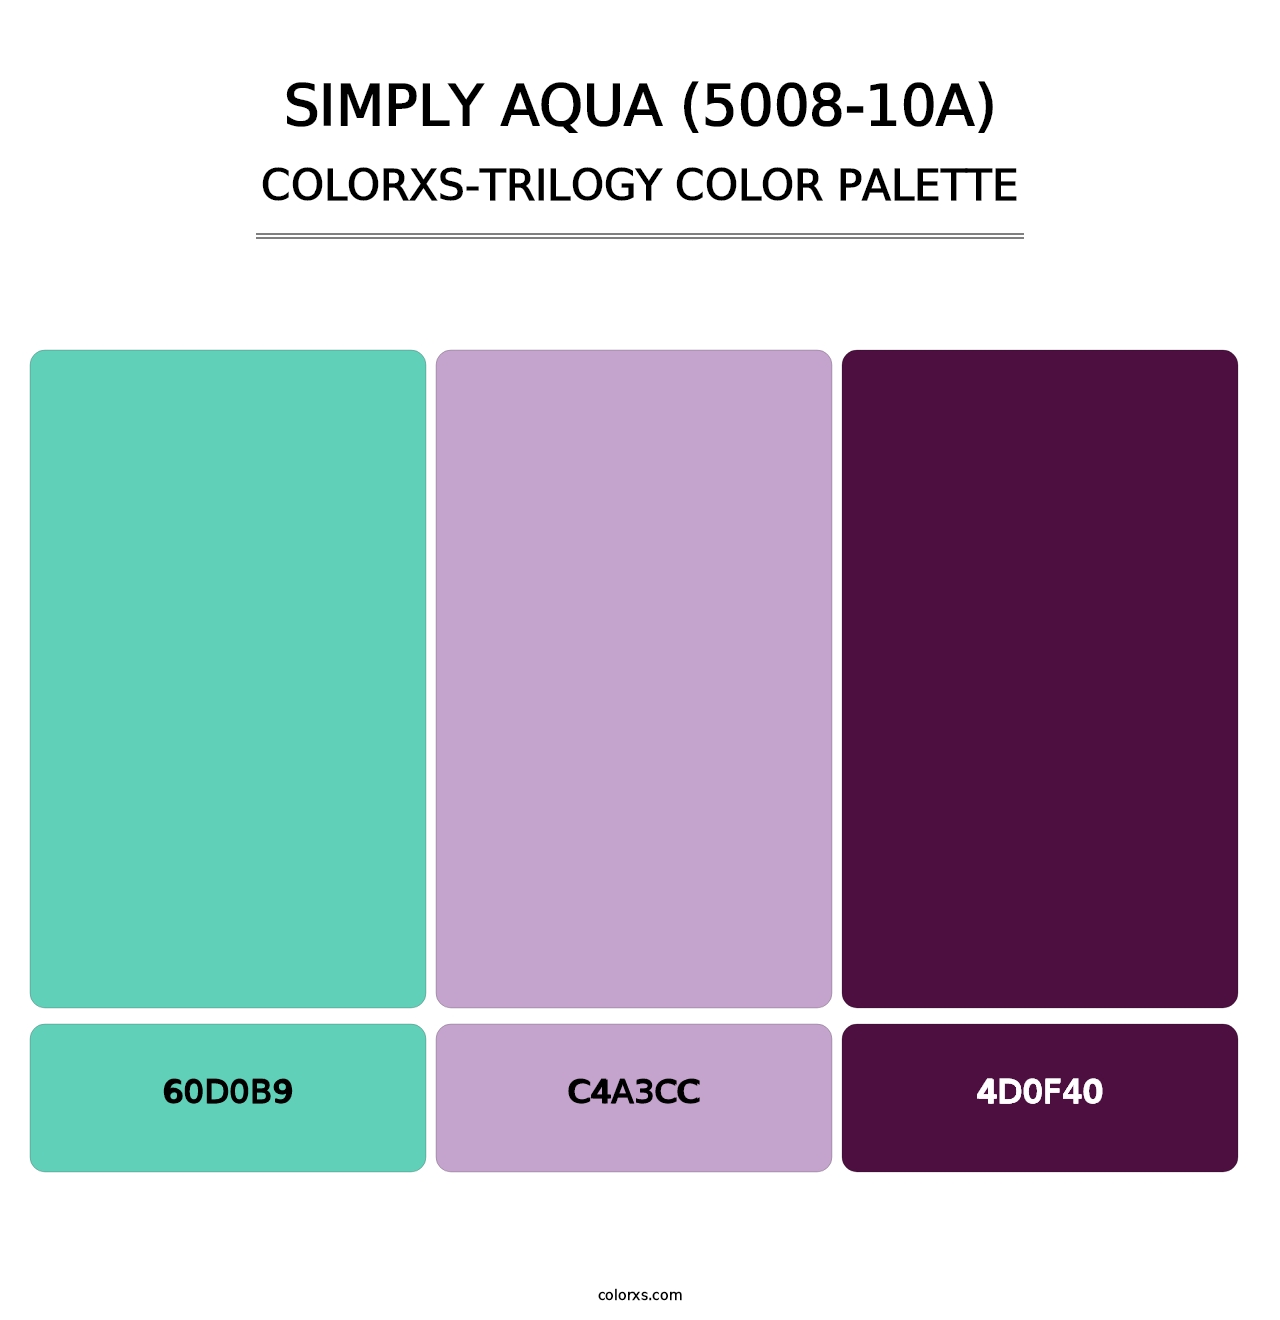 Simply Aqua (5008-10A) - Colorxs Trilogy Palette